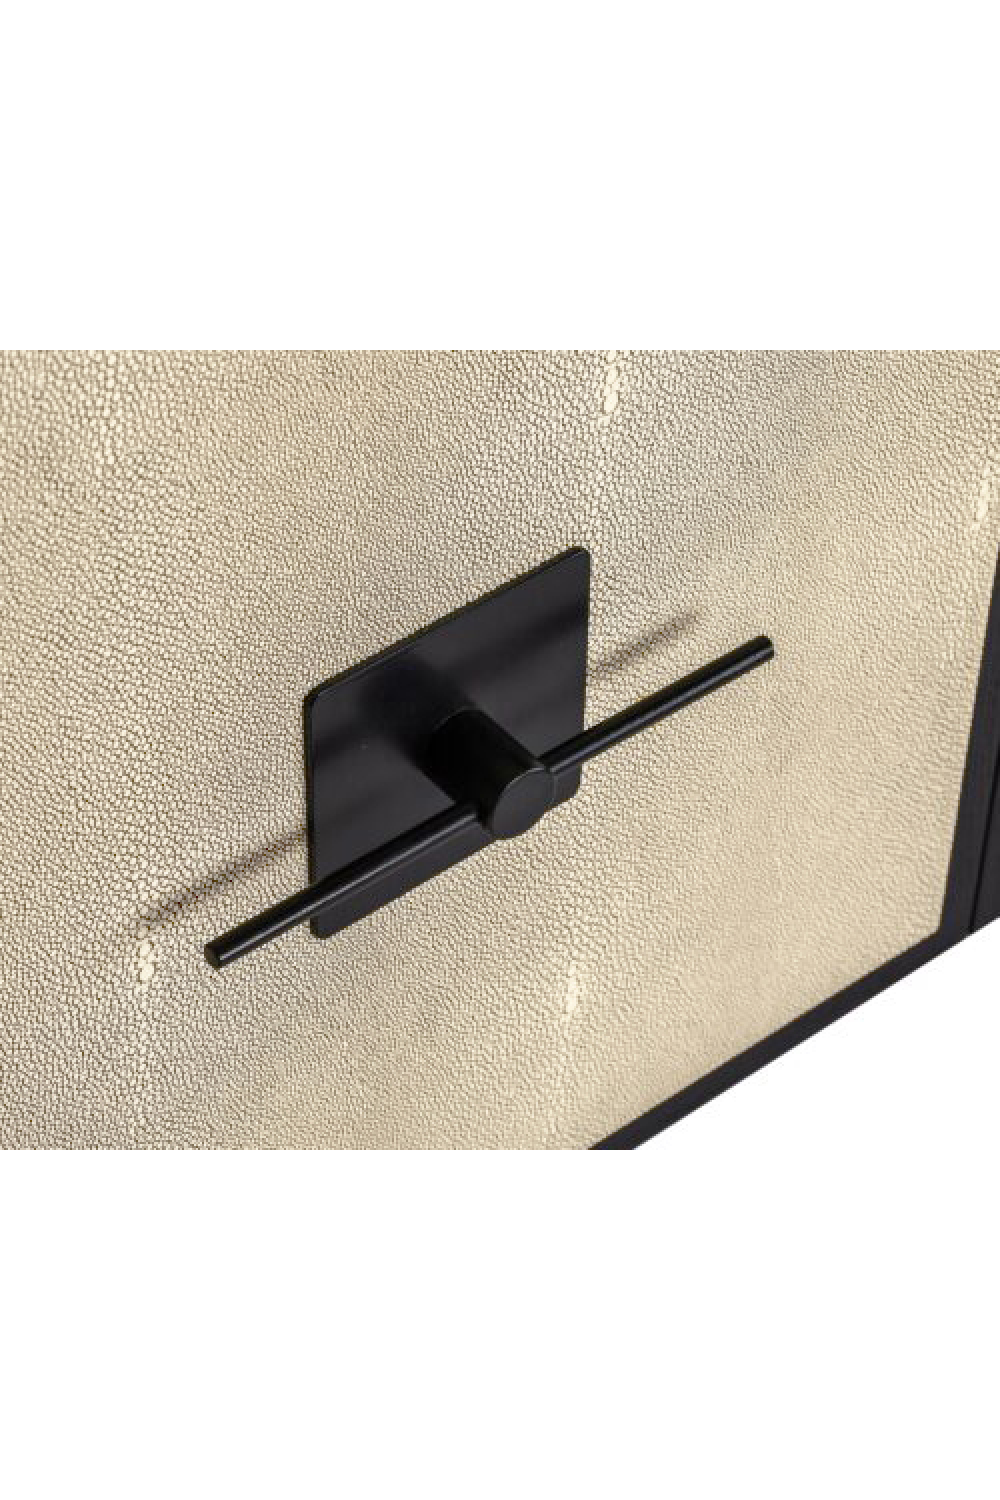 3-Door Shagreen Sideboard | Liang & Eimil Noma 9 | Oroa.com